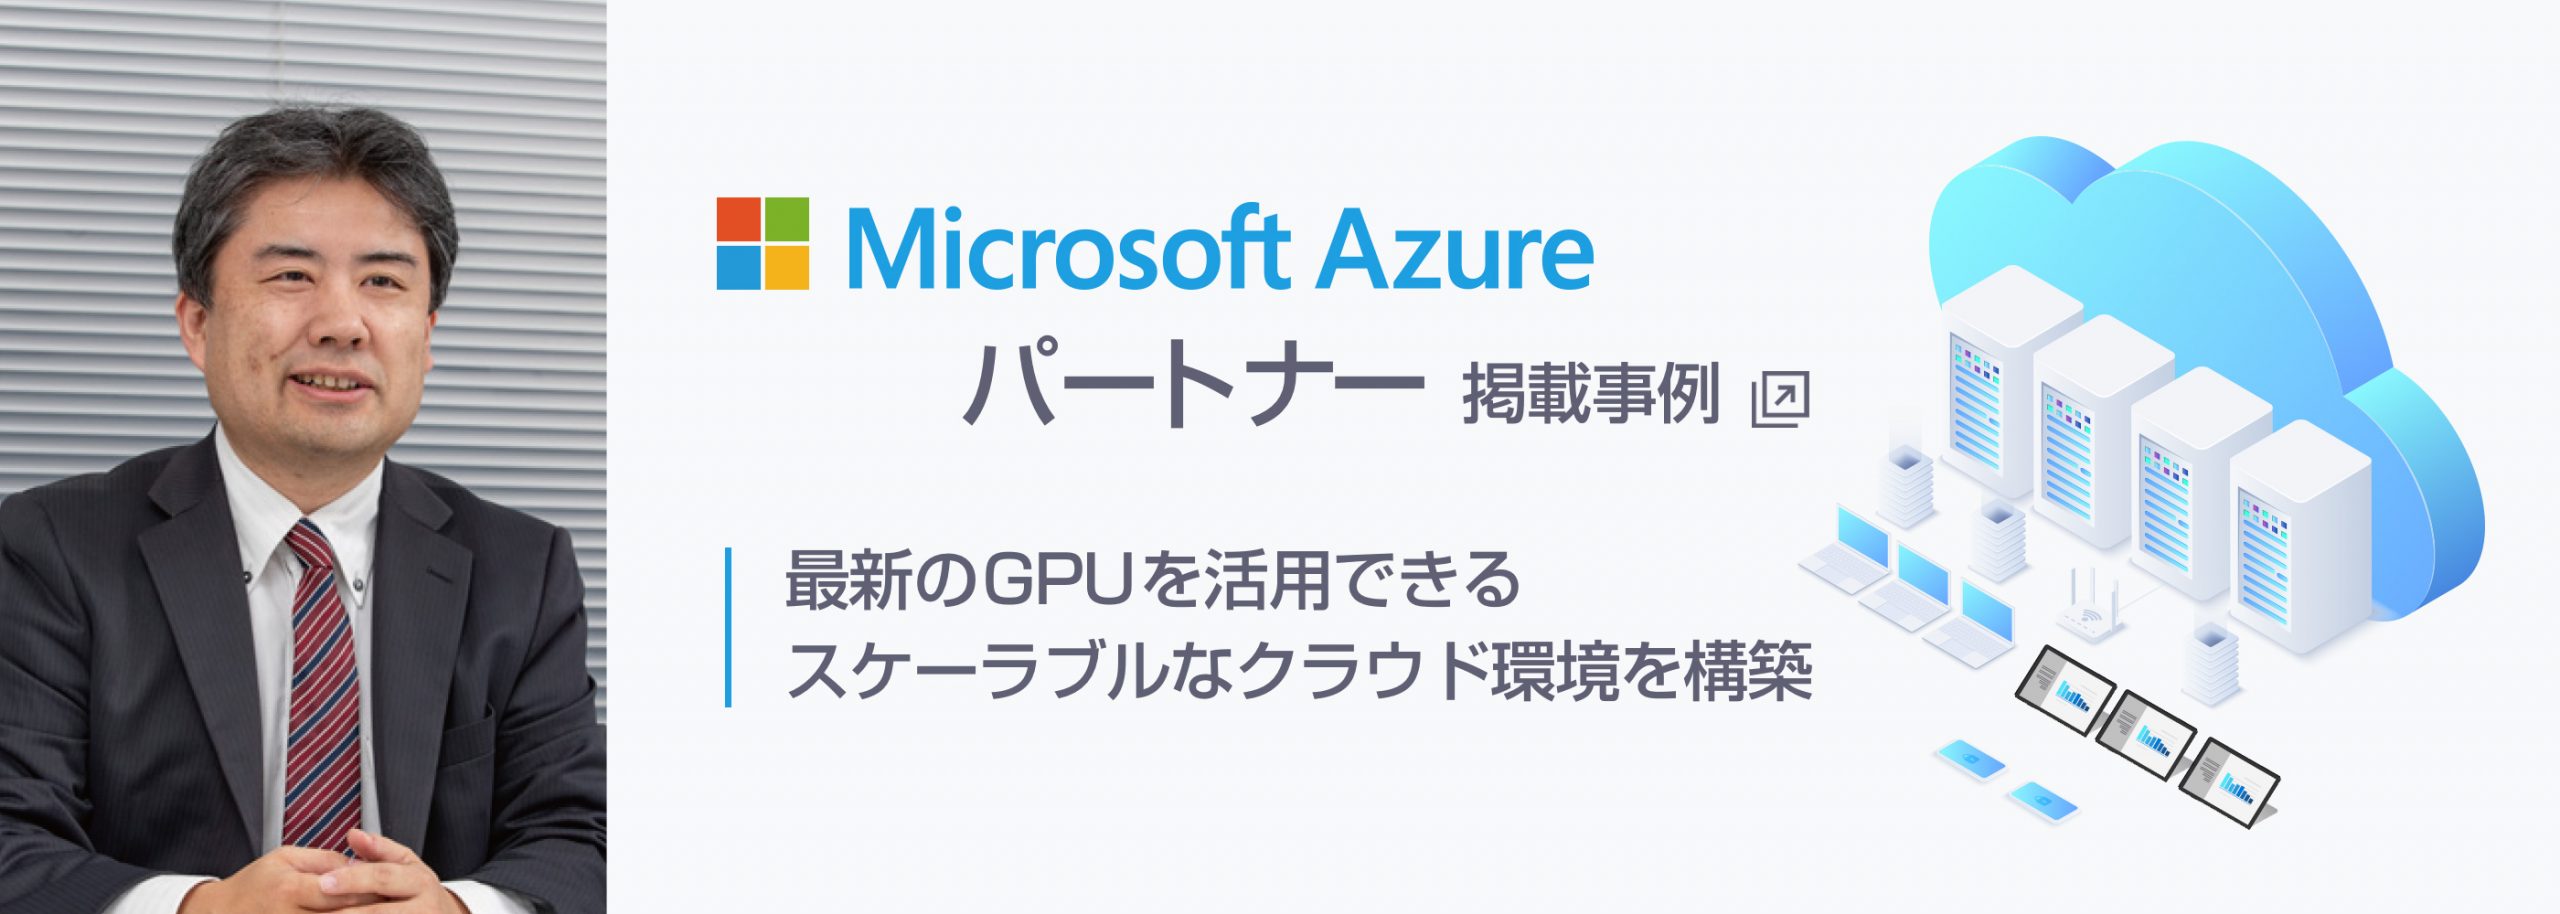 Microsoft Azure パートナー掲載事例